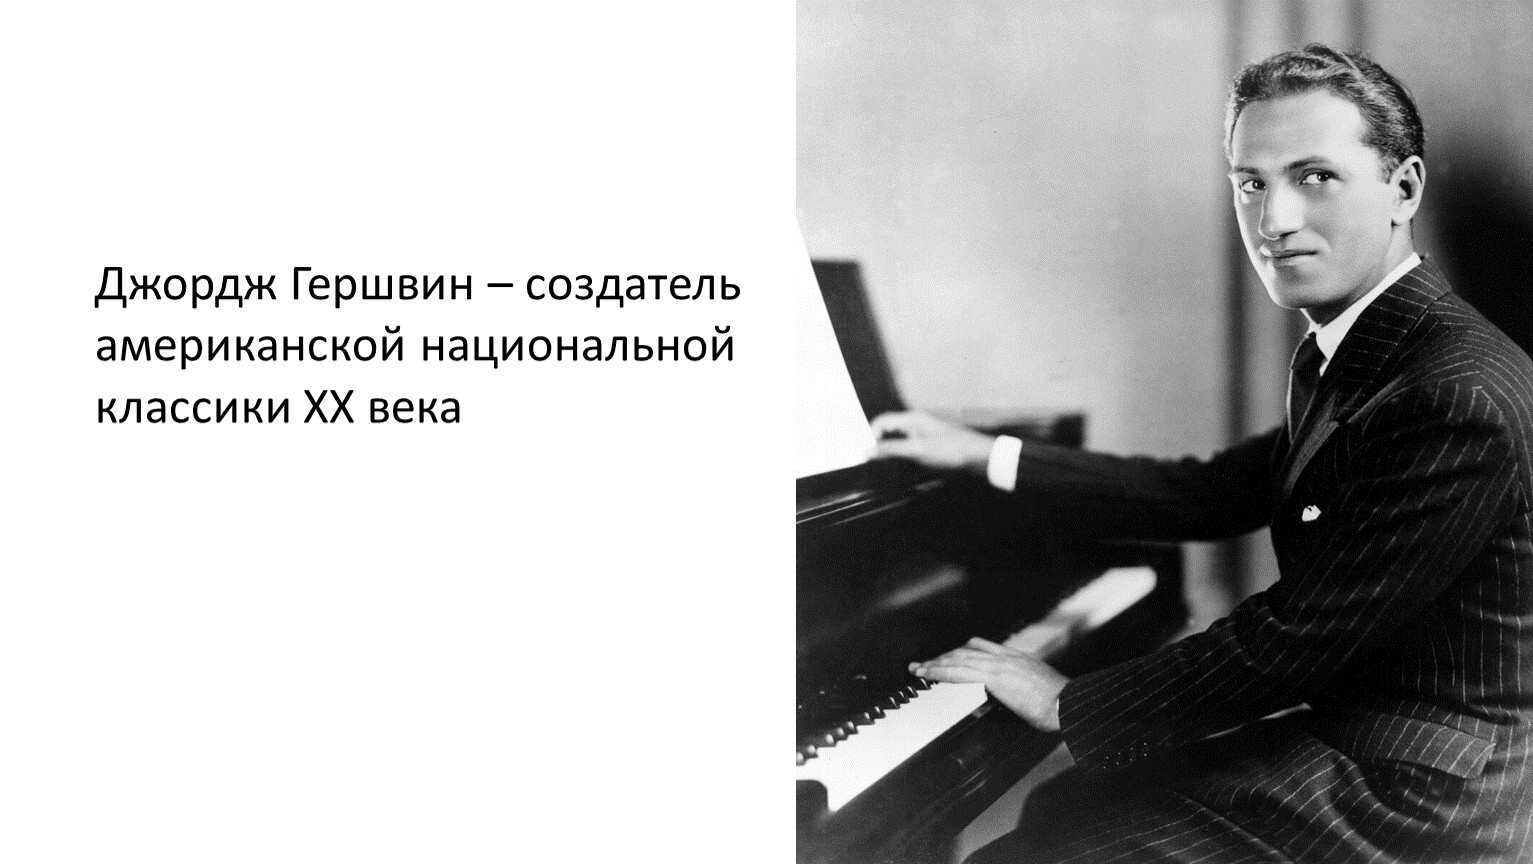 Какой композитор является родоначальником симфоджаза. Гершвин композитор. Джордж Гершвин композитор. Джордж Гершвин - создатель американской национальной классики. Джордж Гершвин (1898–1937).